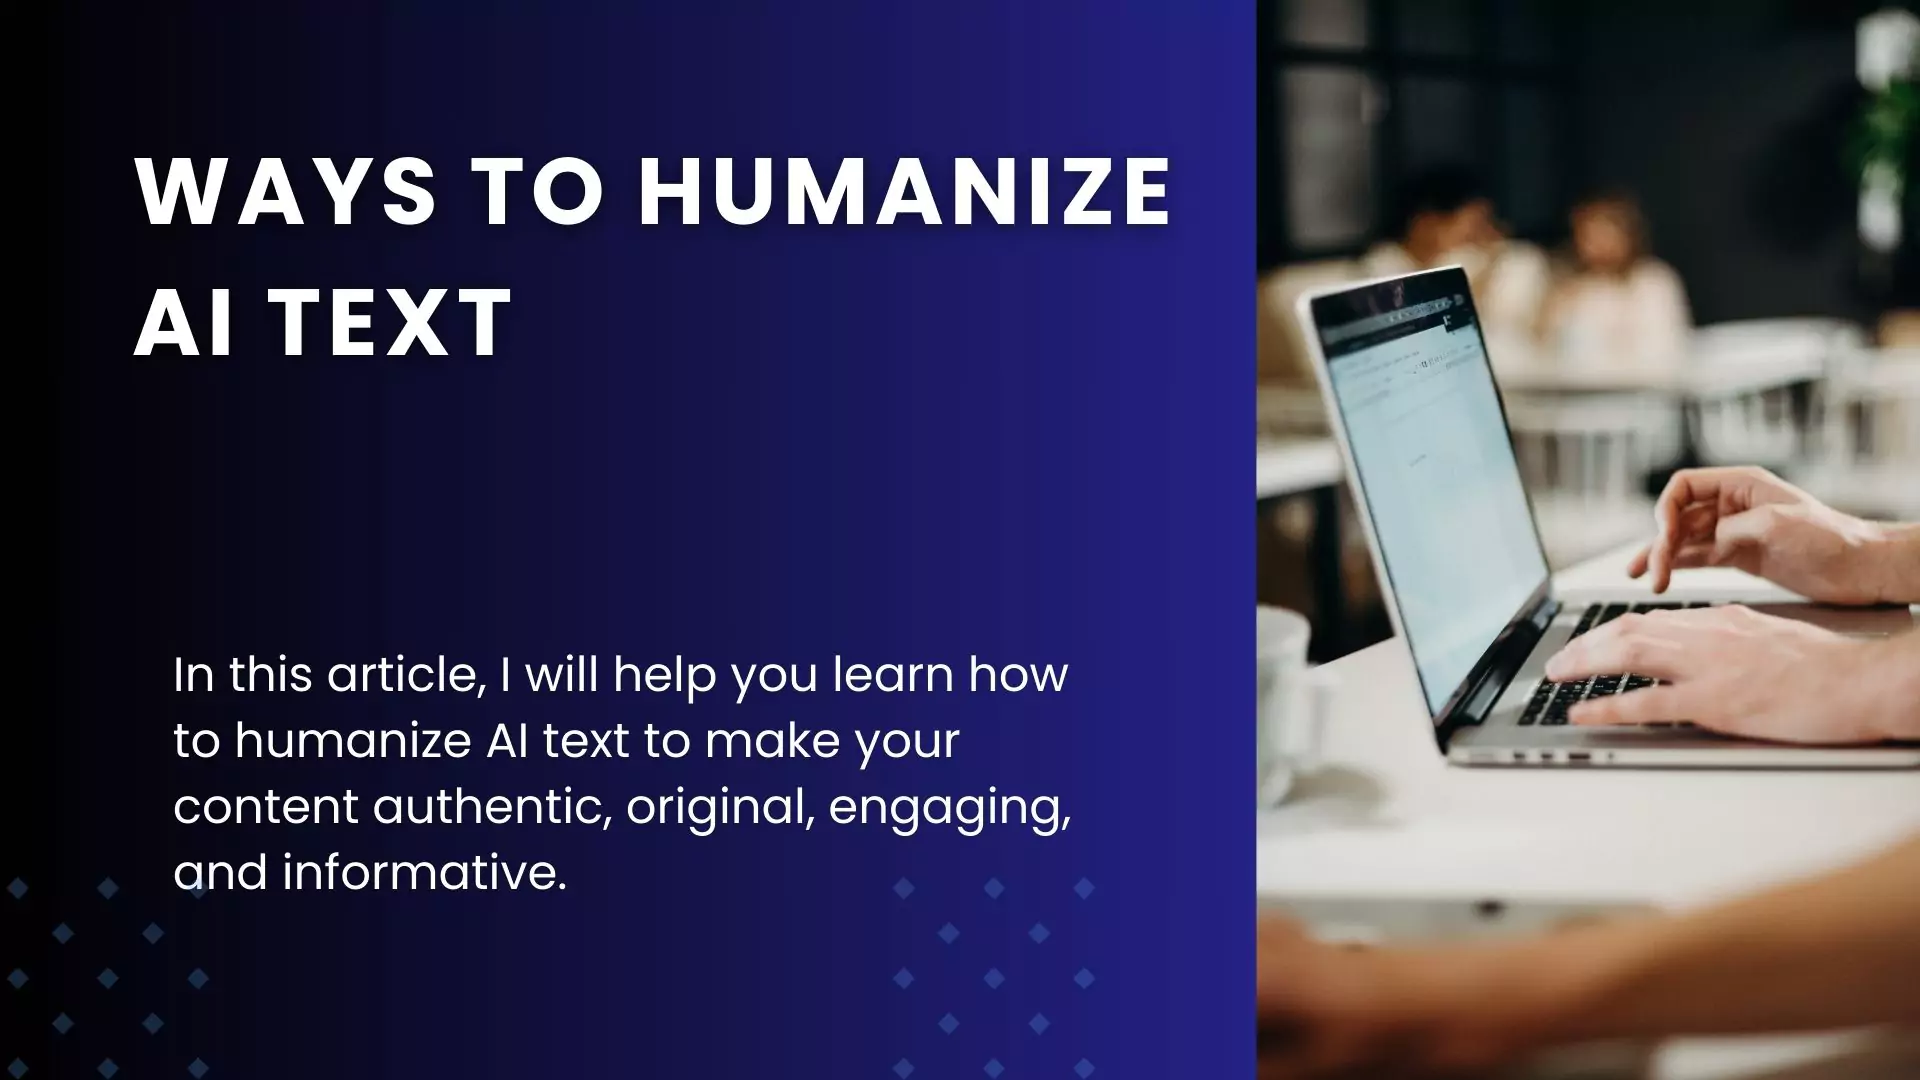 Ways to humanize AI text